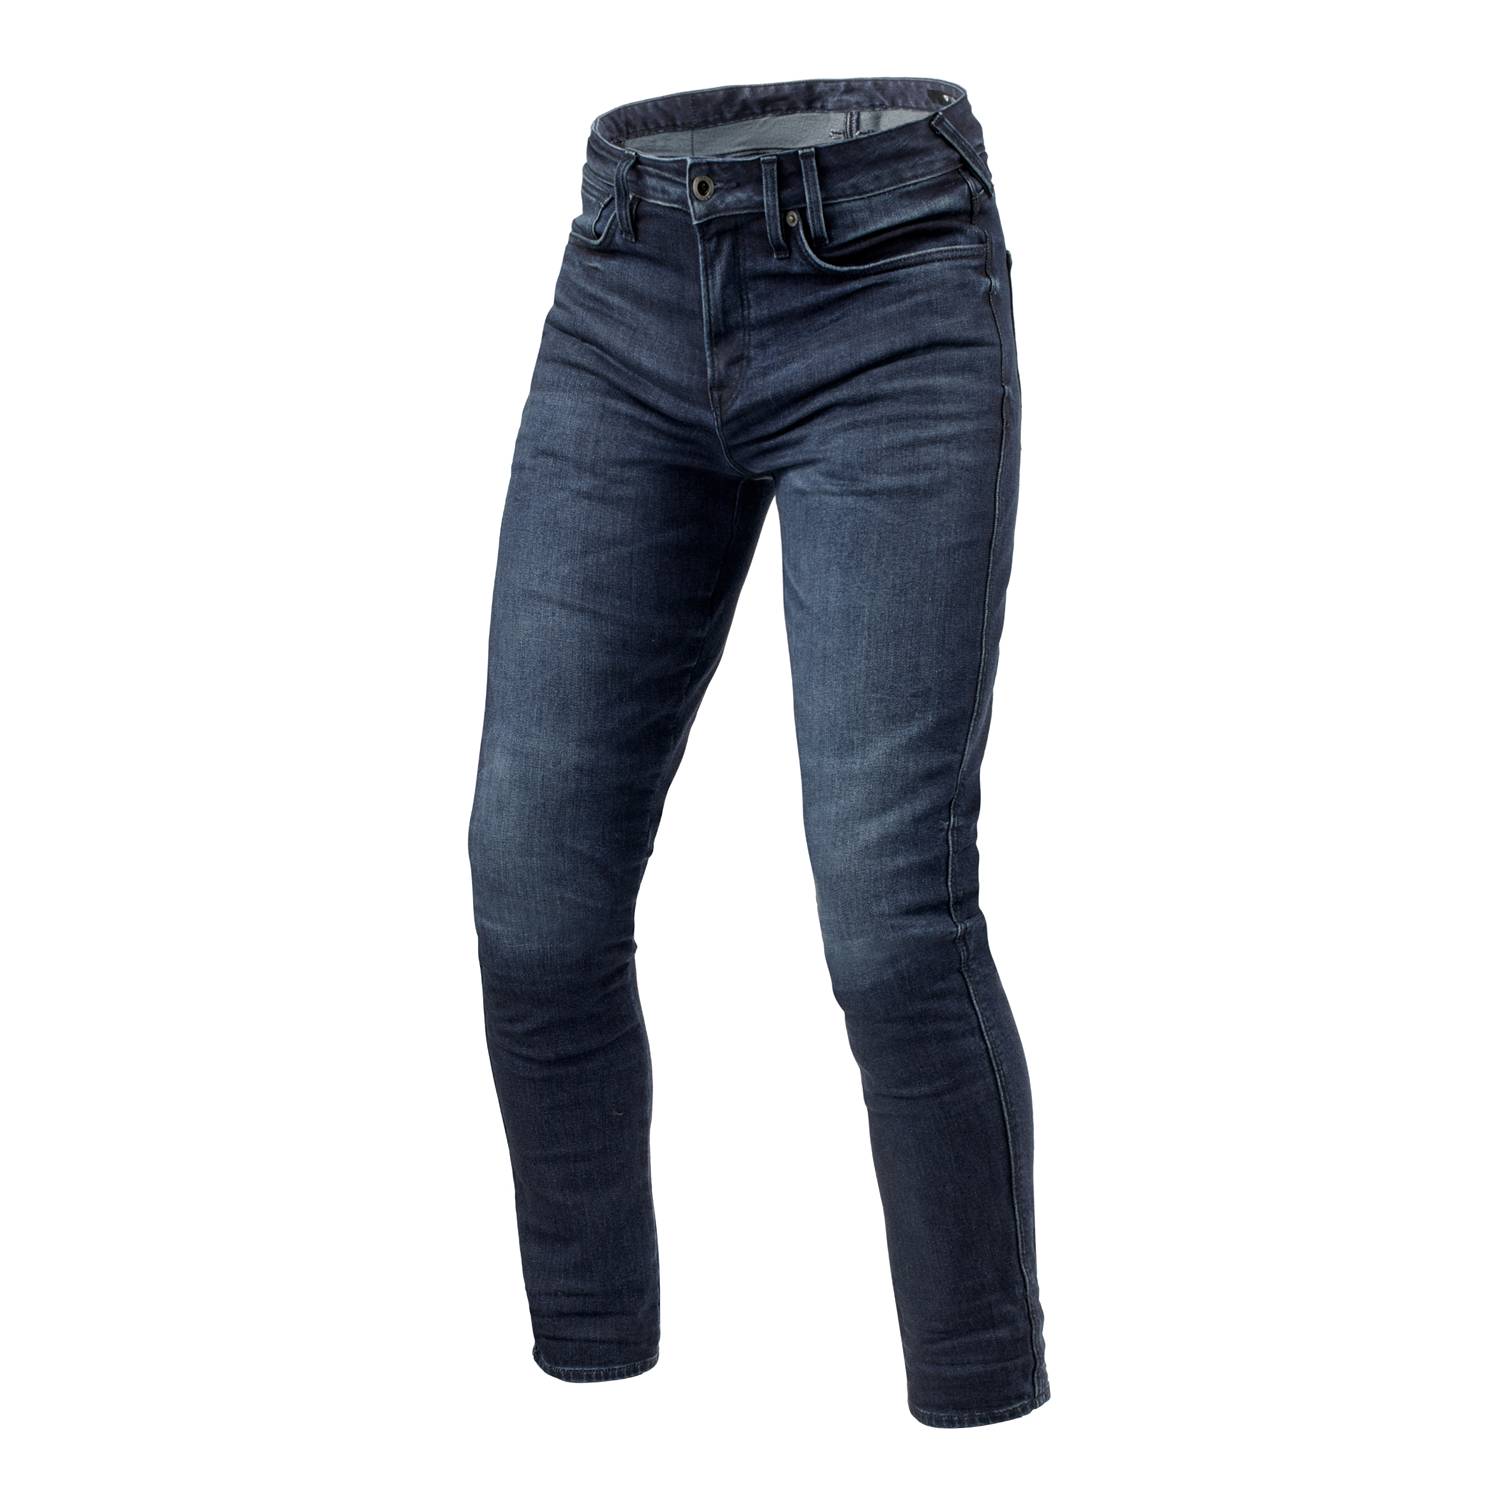 Image of REV'IT! Jeans Carlin SK Dark Blue Used L34 Motorcycle Jeans Size L34/W36 EN